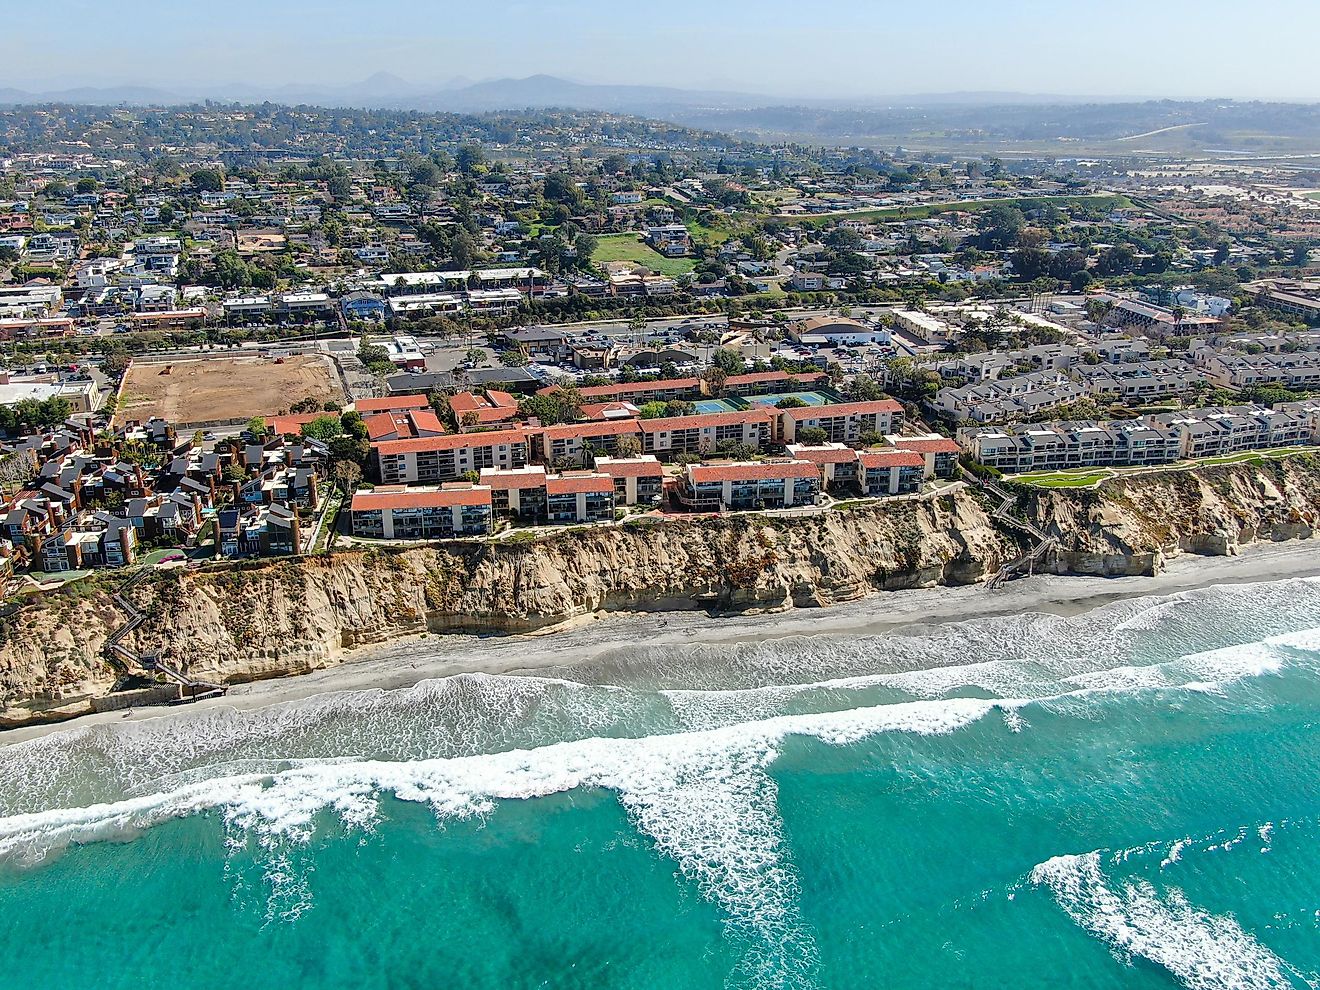 Aerial view of Solana Beach, California.